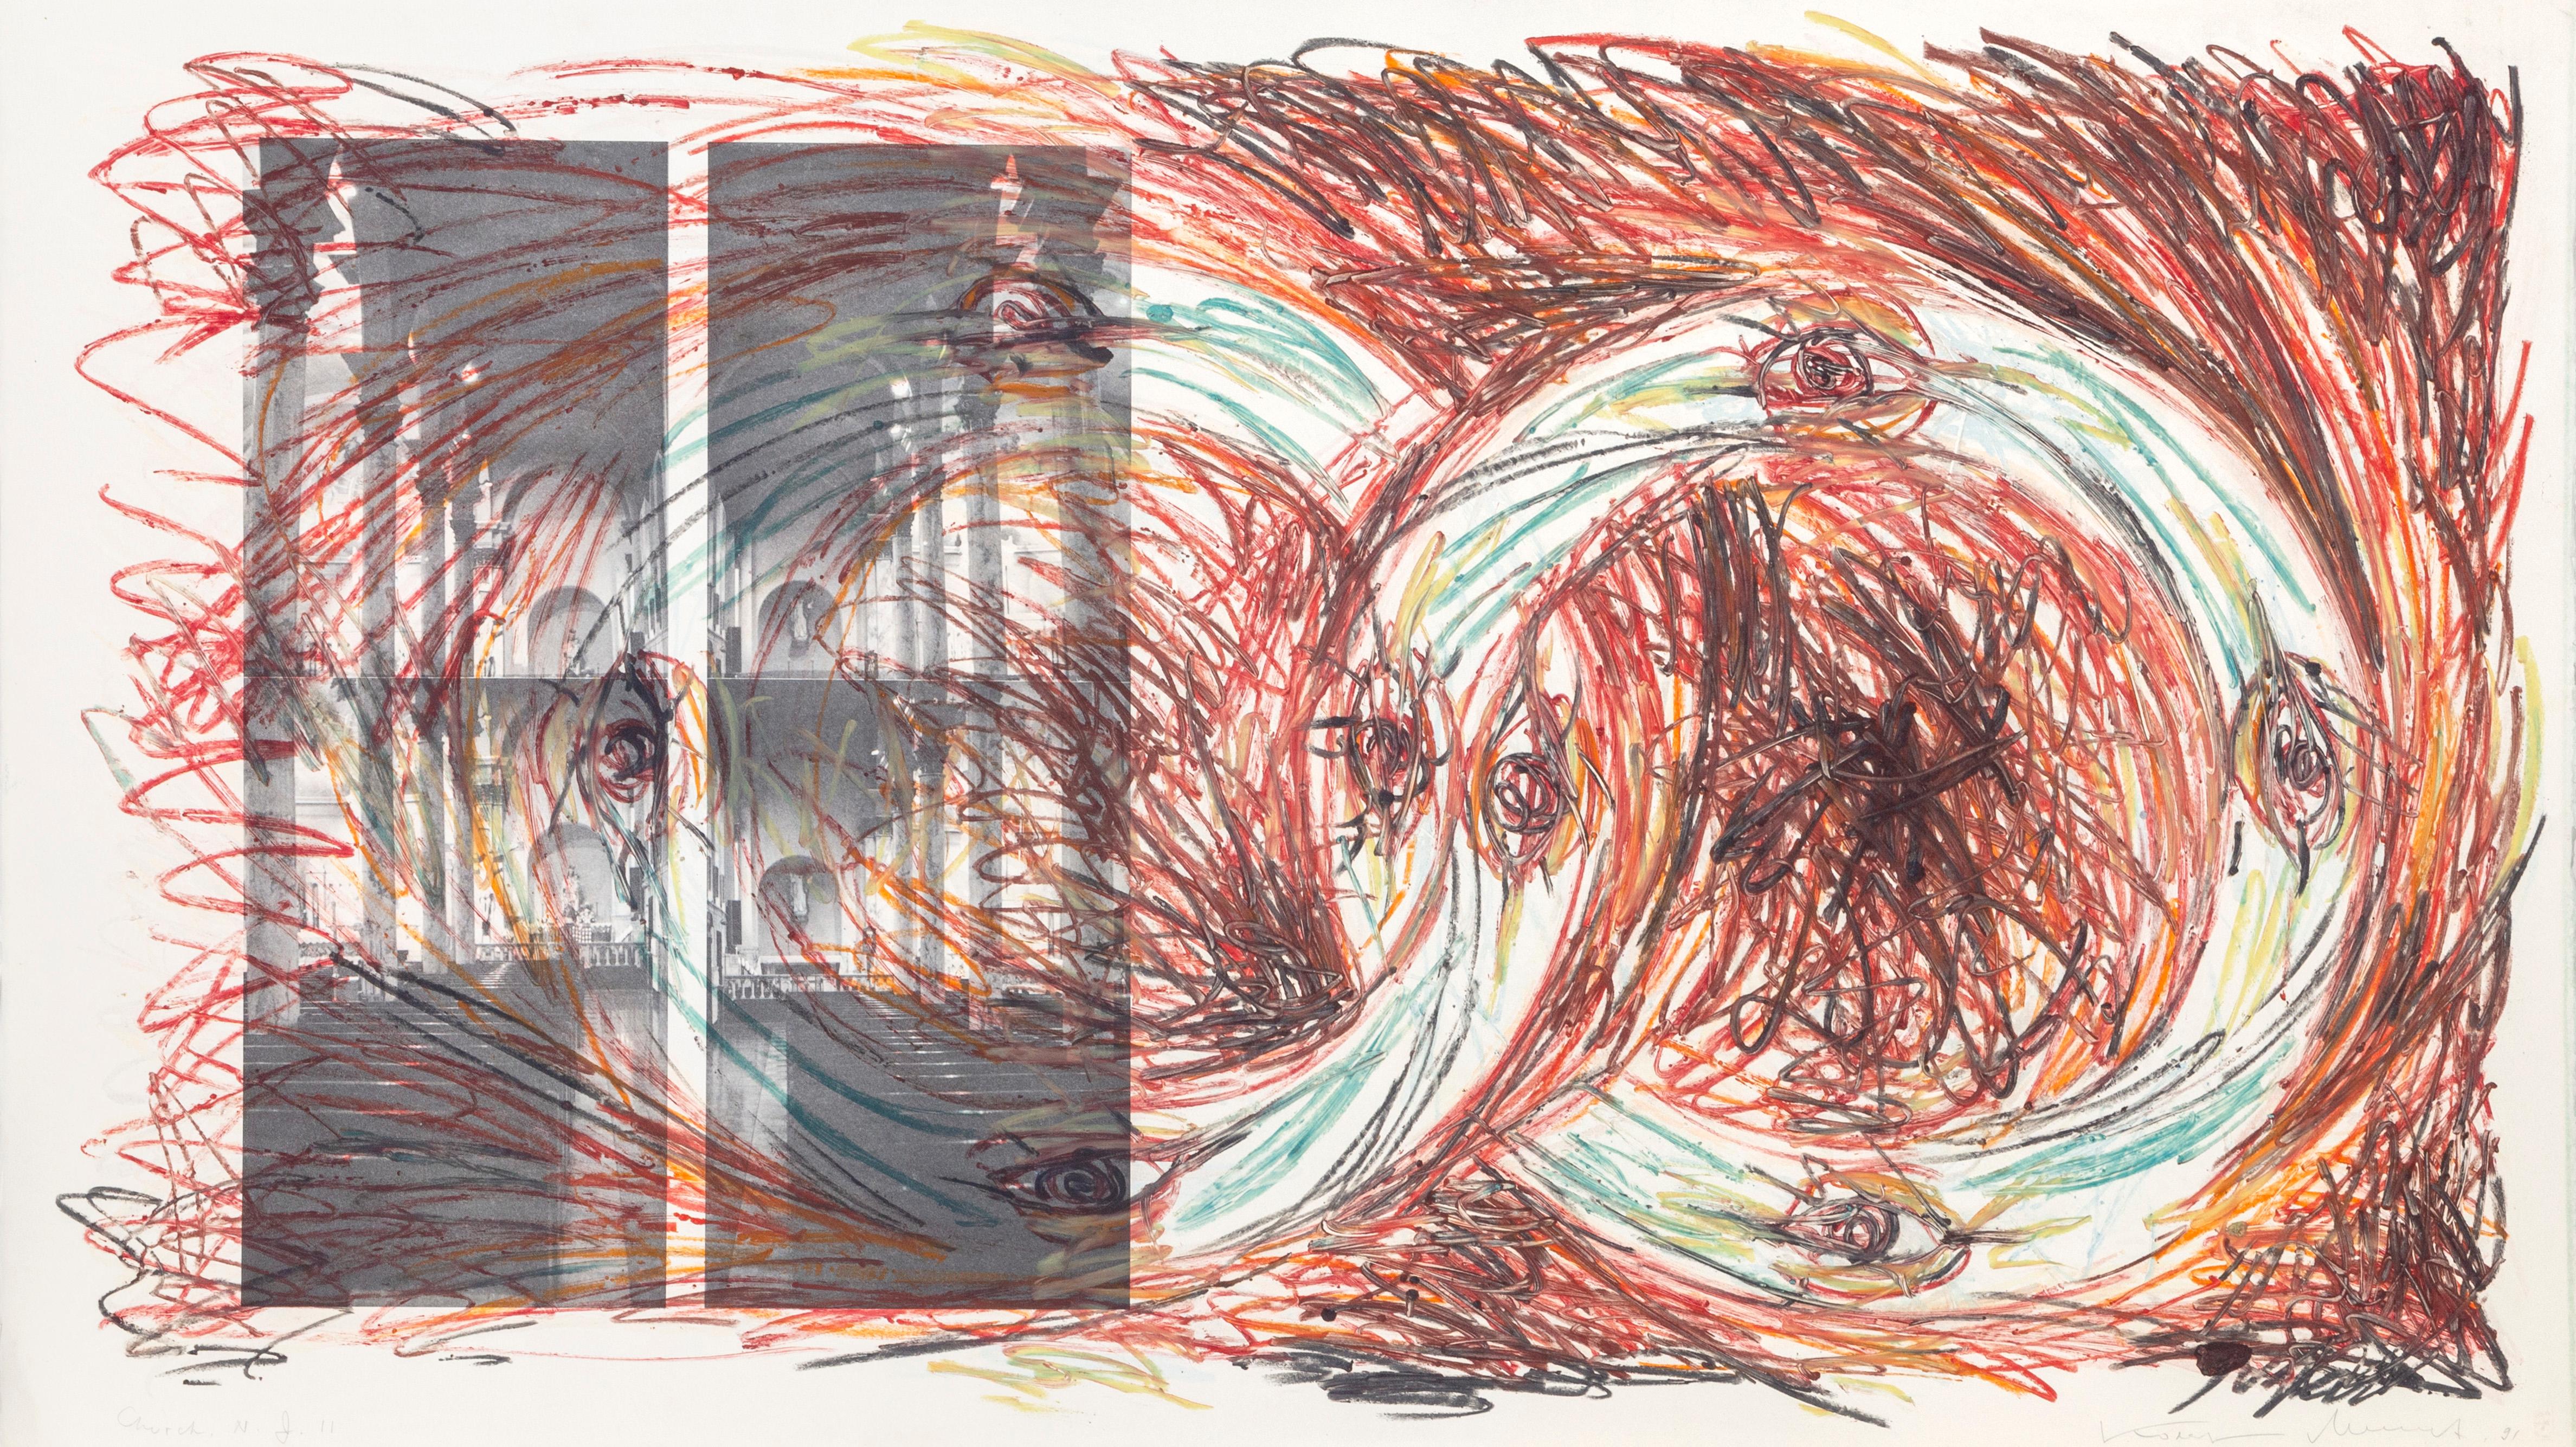 Artistics : Vitali Komar, russe (1943 - ) et Alexander Melamid, russe (1945 - )
Titre : Church, NJ
Année : 1991
Moyen : Eau-forte, signée, numérotée, datée et inclinée au crayon 
Format du papier : 30 x 53 pouces (76,2 x 134,62 cm)